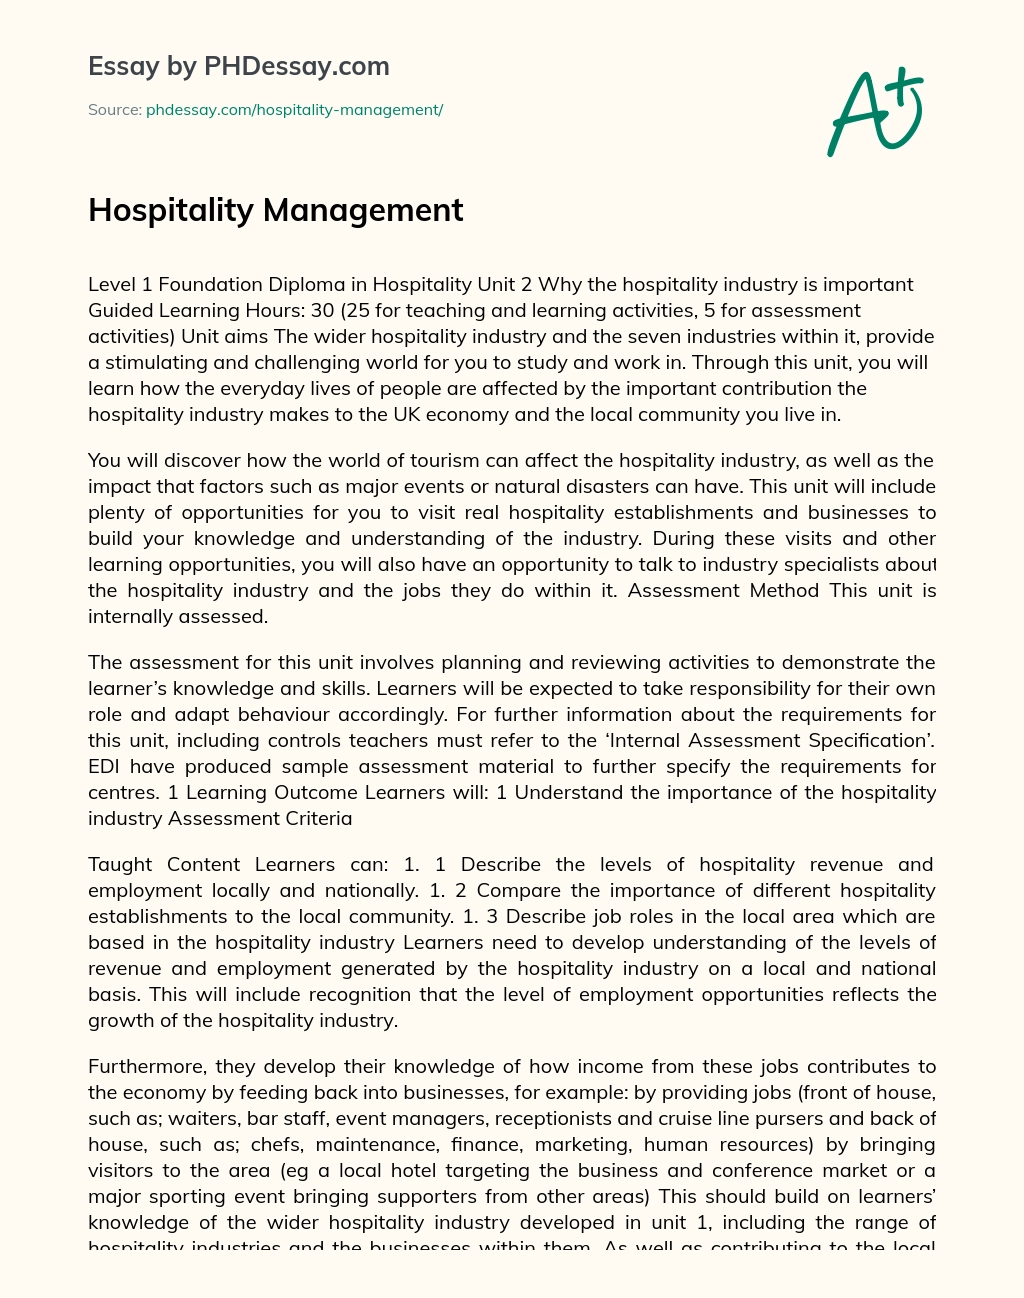 Hospitality Management essay